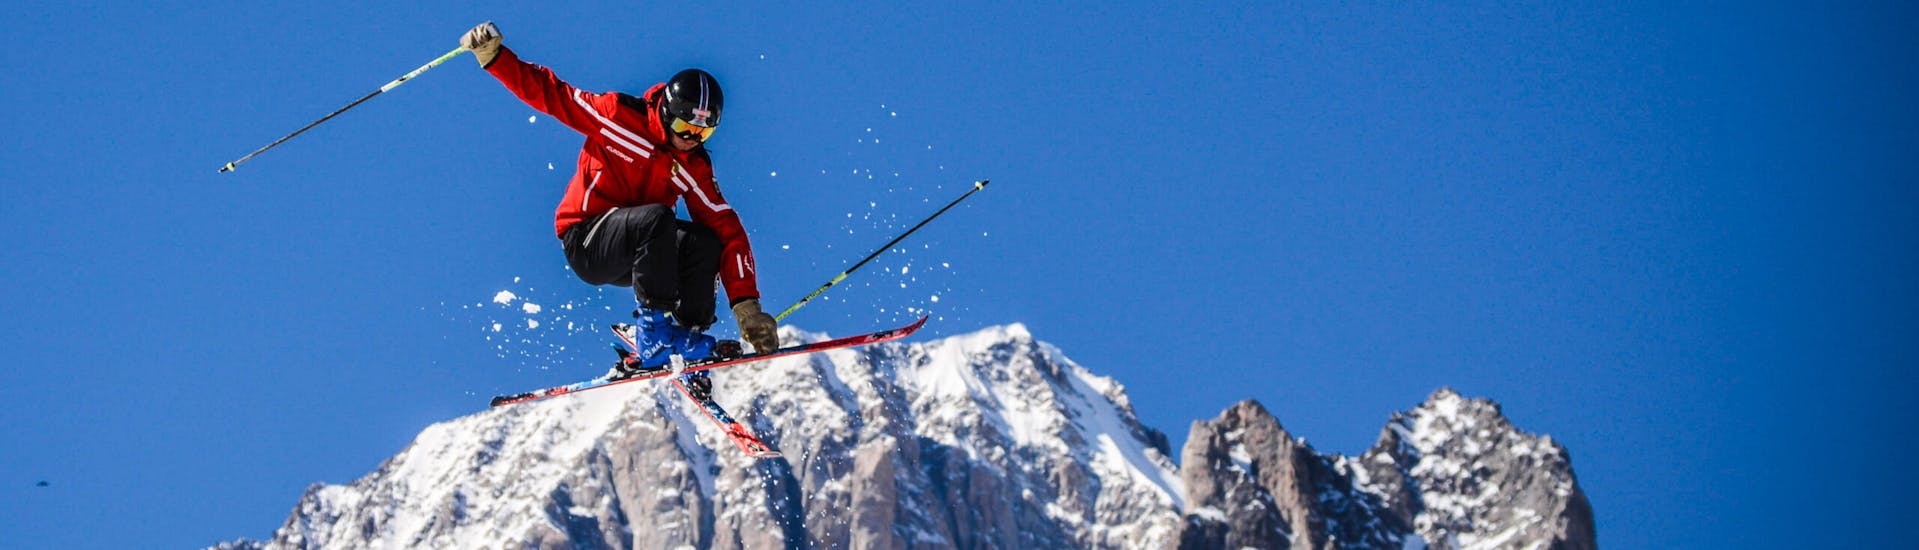 Clases de esquí para adultos a partir de 13 años para todos los niveles.